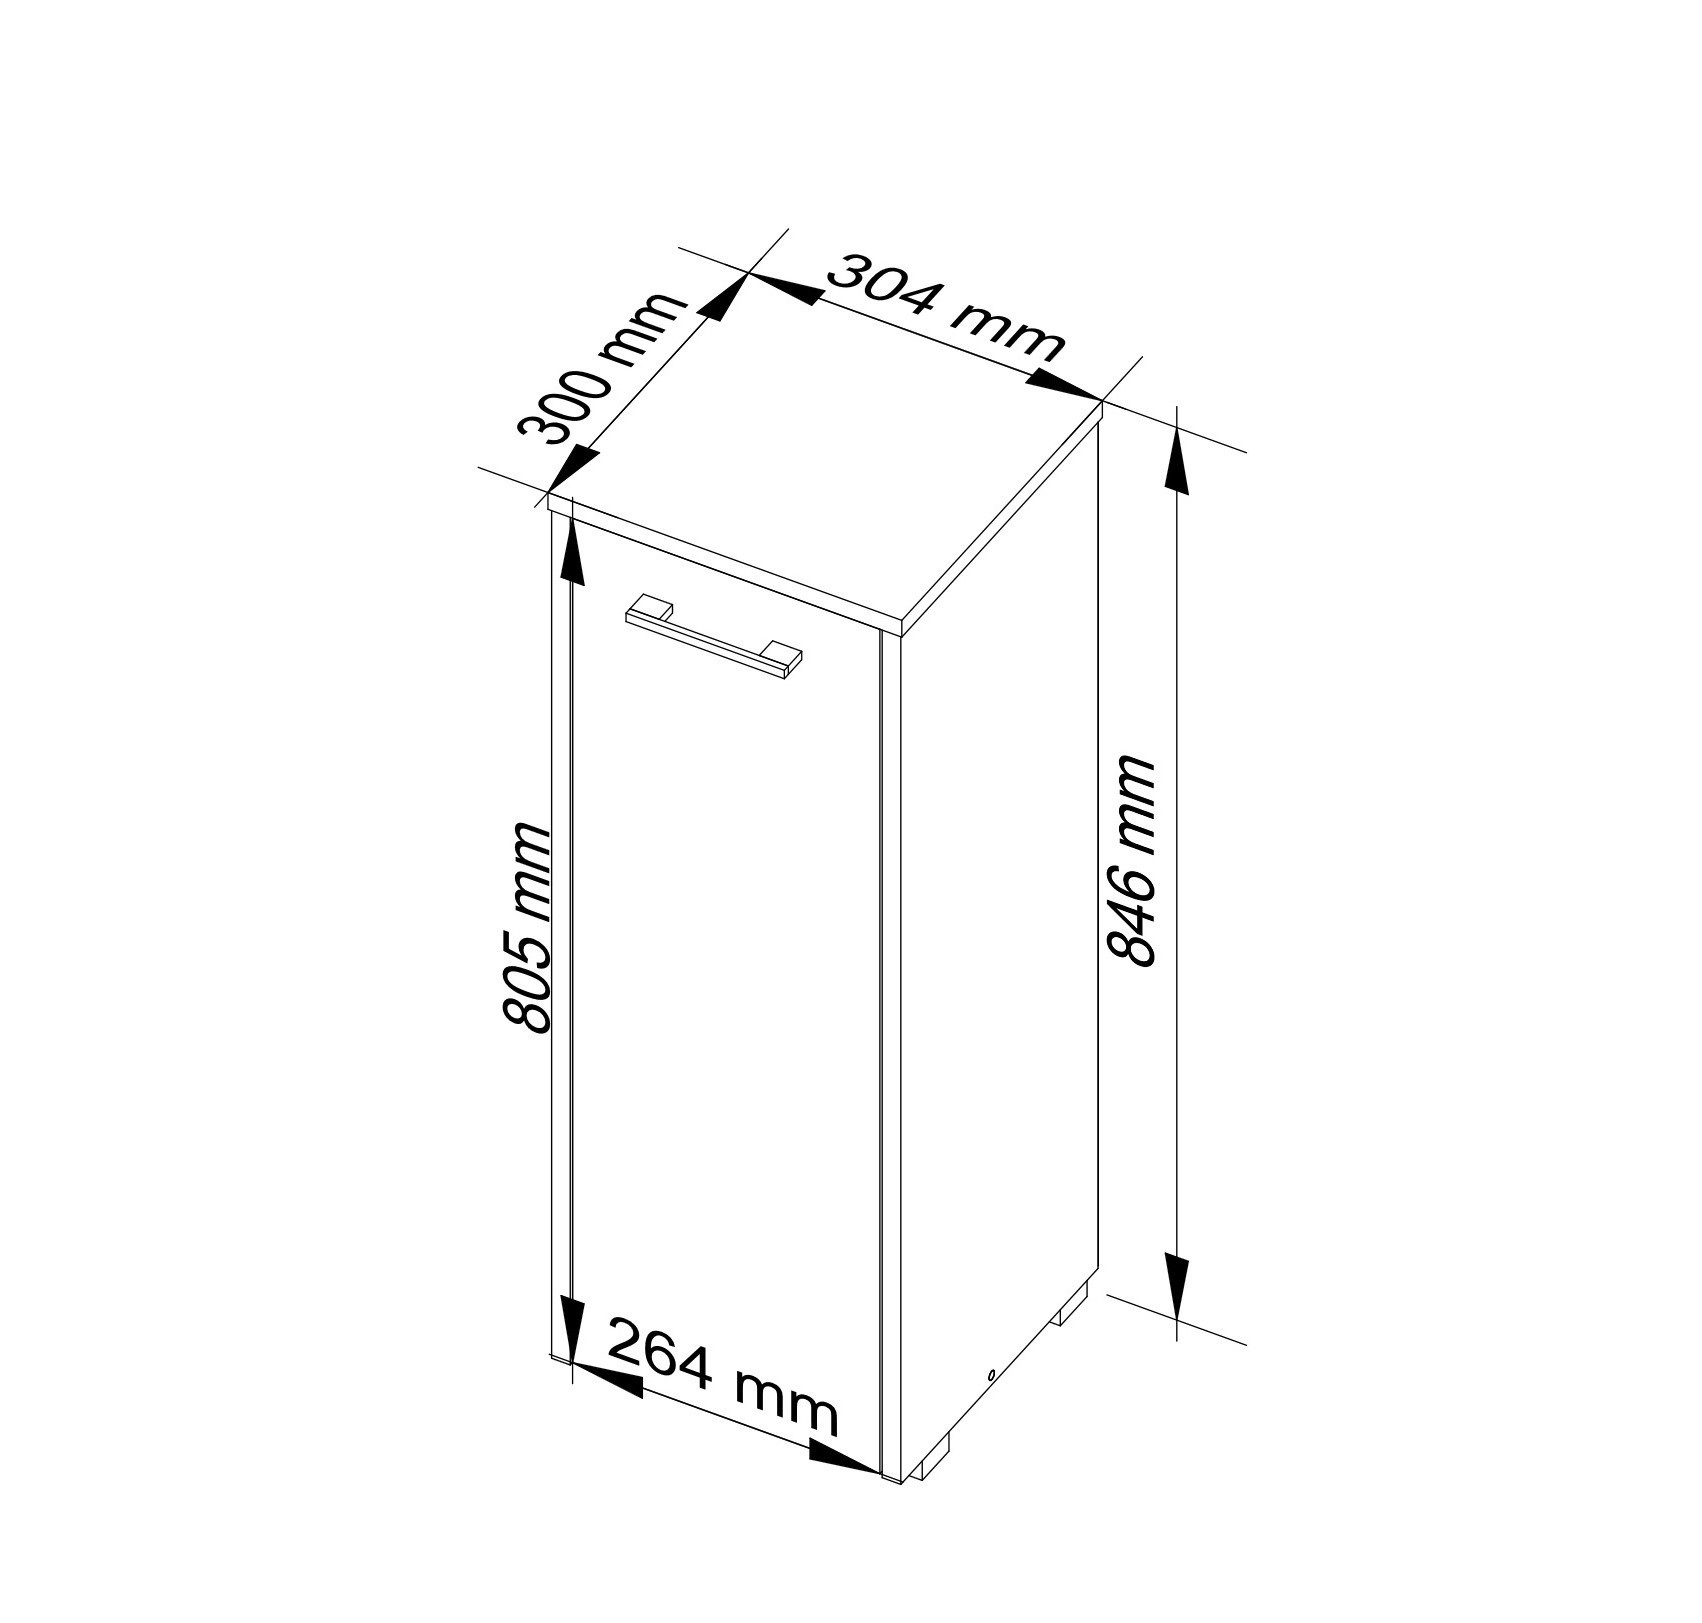 Meble AKORD - Szafka łazienkowa FIN Wenge 30 cm 1 drzwi kolor Wenge mat 2 półki 30x30x82 cm - Wymiary toaletki AKORD - 5907504389448